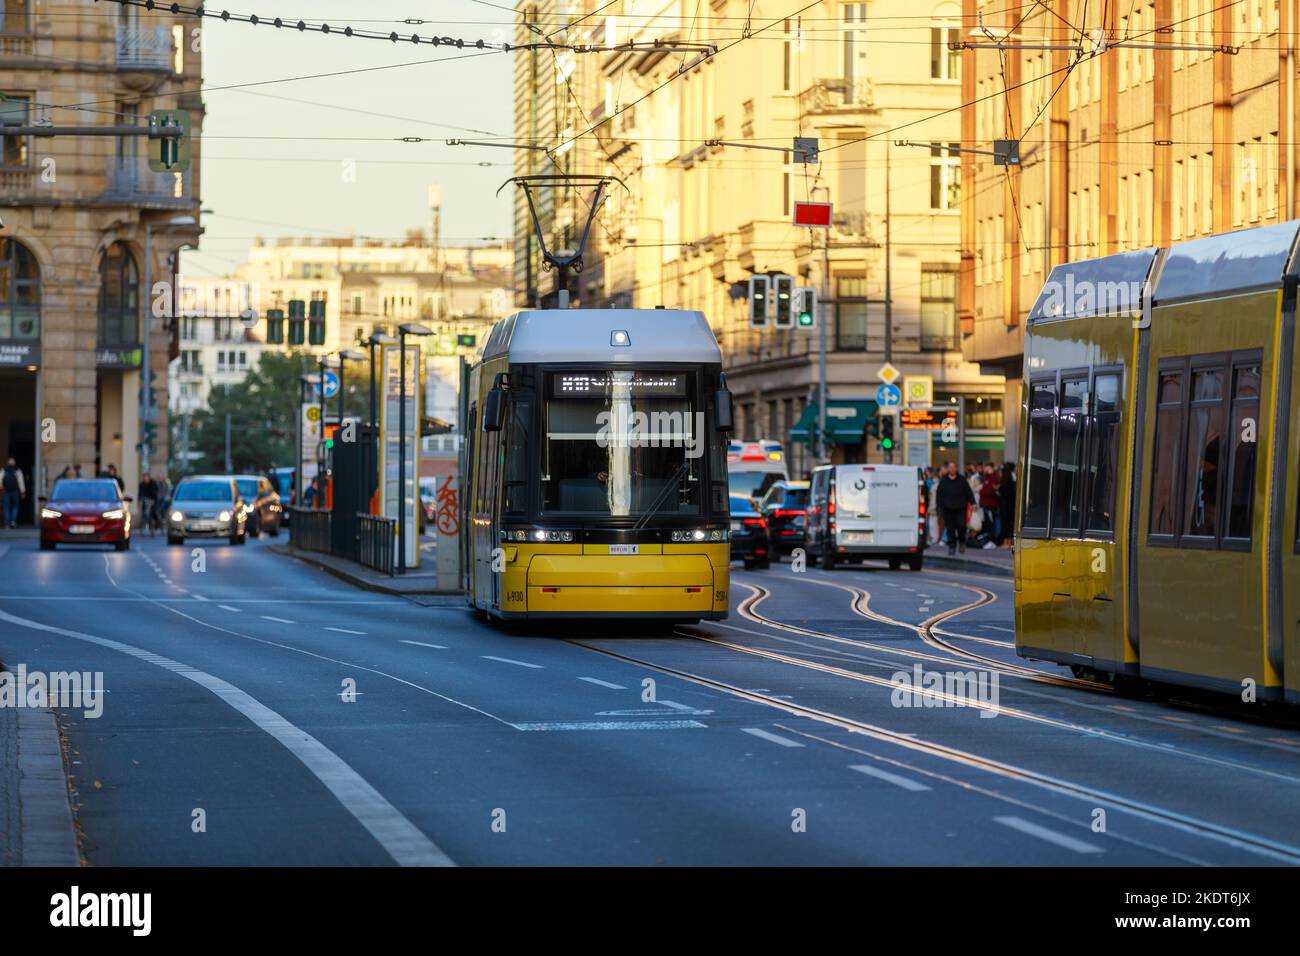 Berlin, Germany - October 7, 2022: Yellow tram drives along a street. The Berlin tramway (German: Straßenbahn Berlin) is the main tram system in Berli Stock Photo